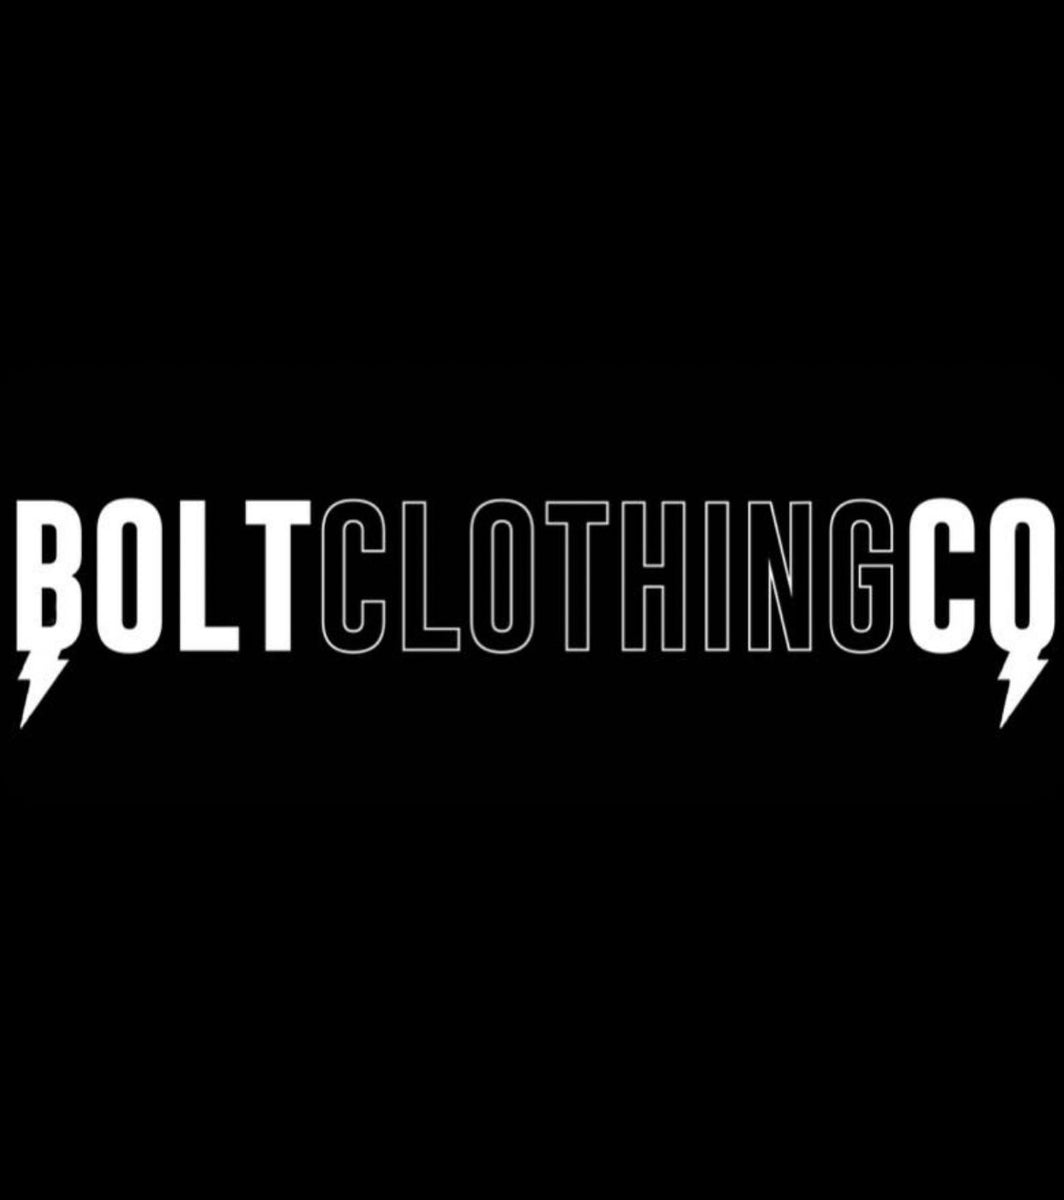 BOLT CLOTHING COMPANY